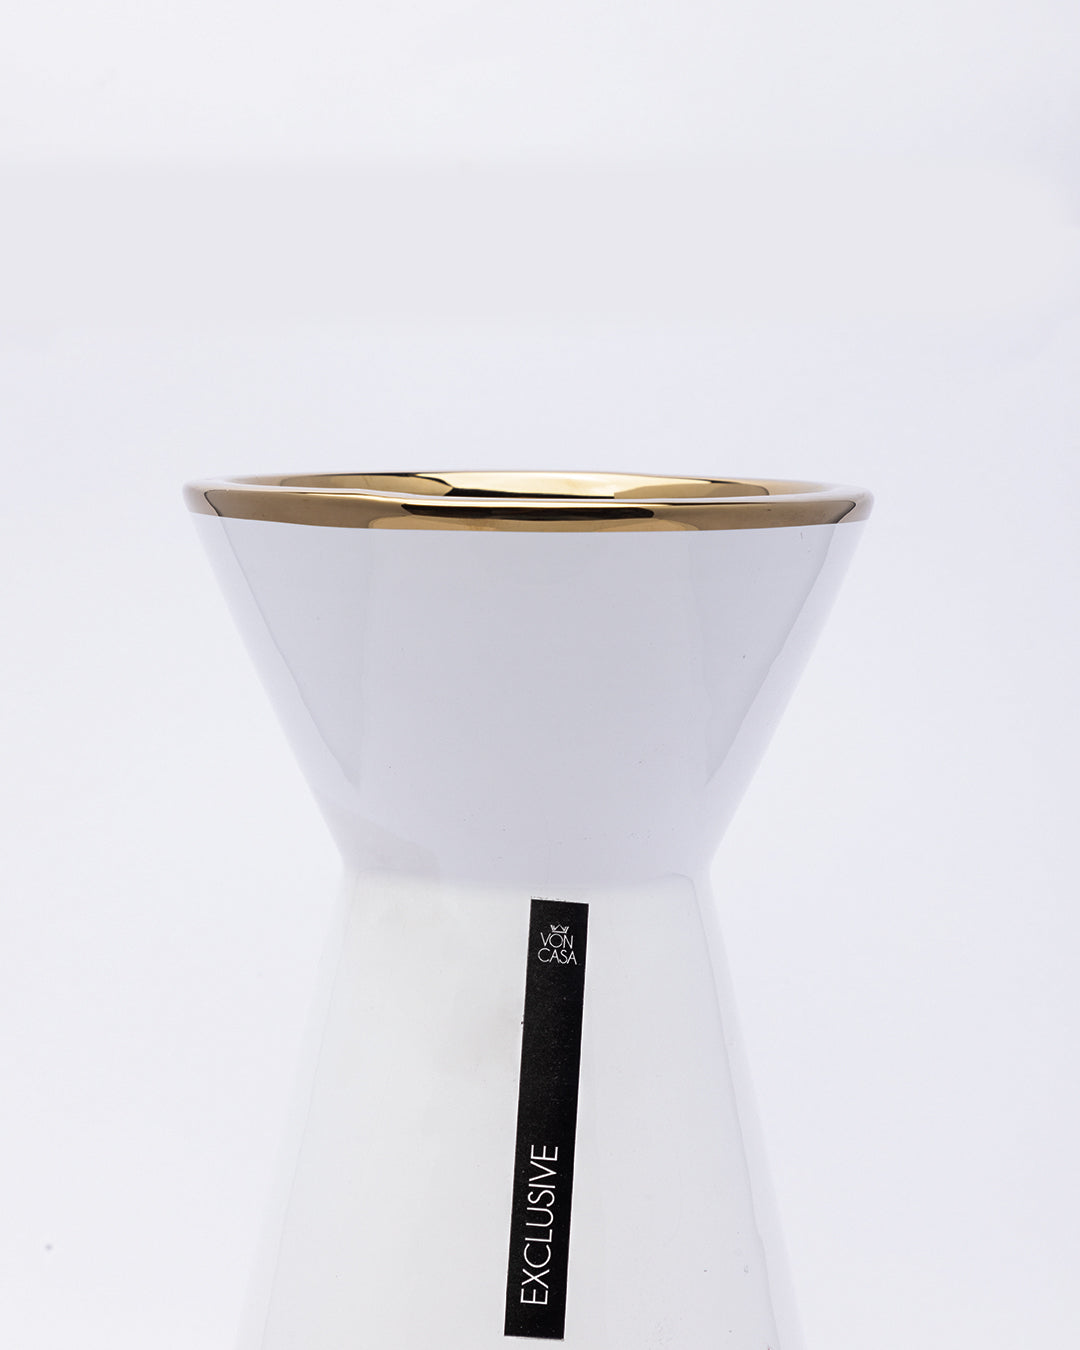 VON CASA Vase, Flower Vase, Unique Glazed Design, Decorative Vase, White, Ceramic